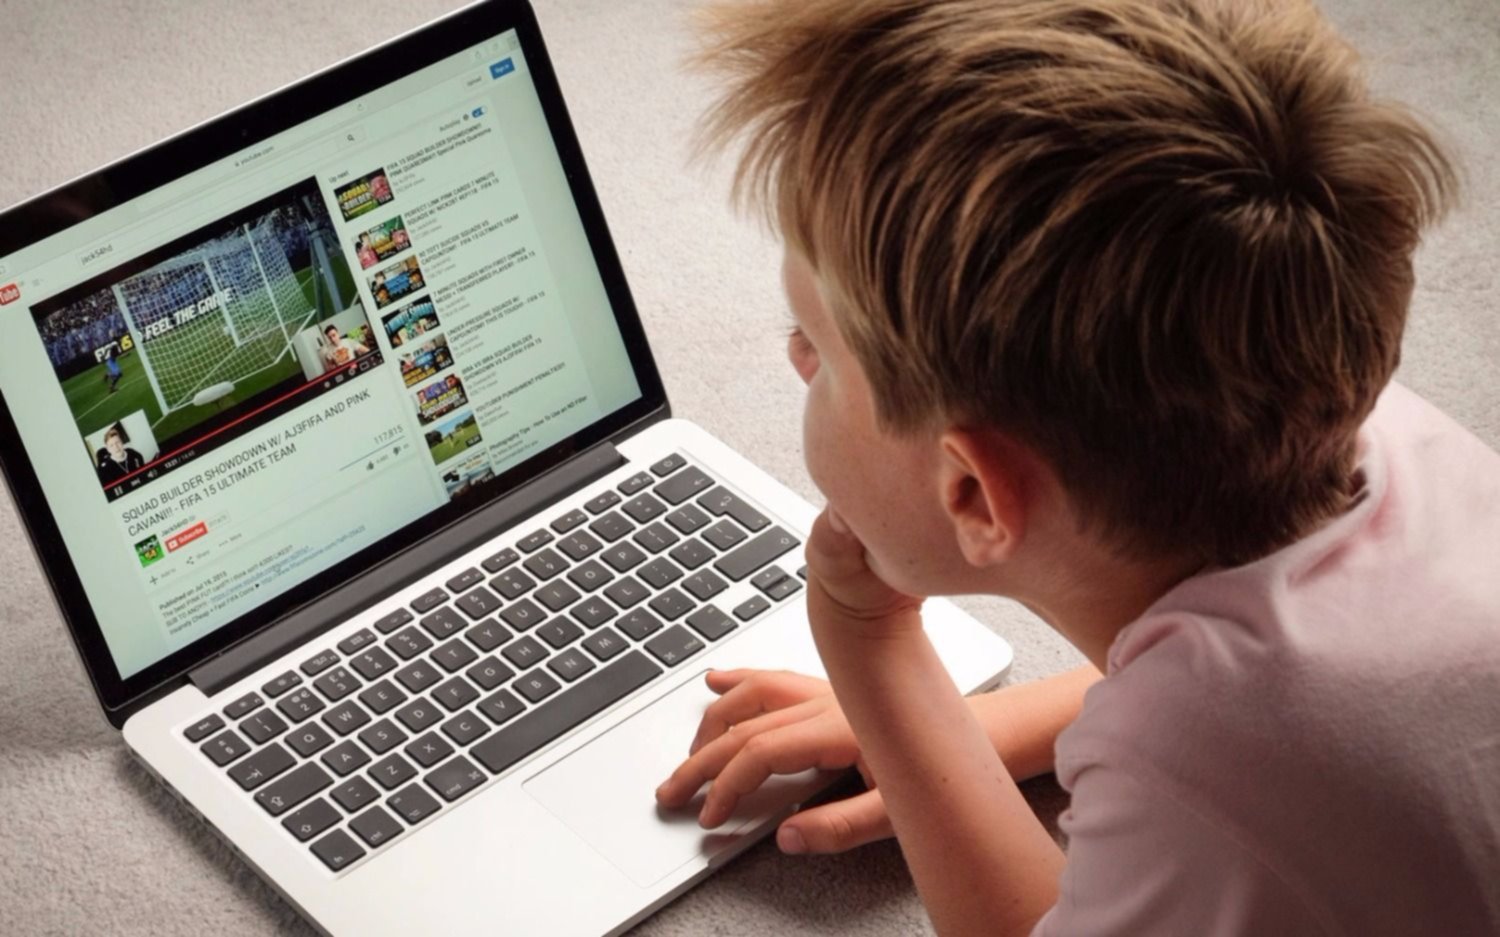 Youtube Kids lanzó nuevas funciones para el control de los padres sobre lo que ven sus hijos